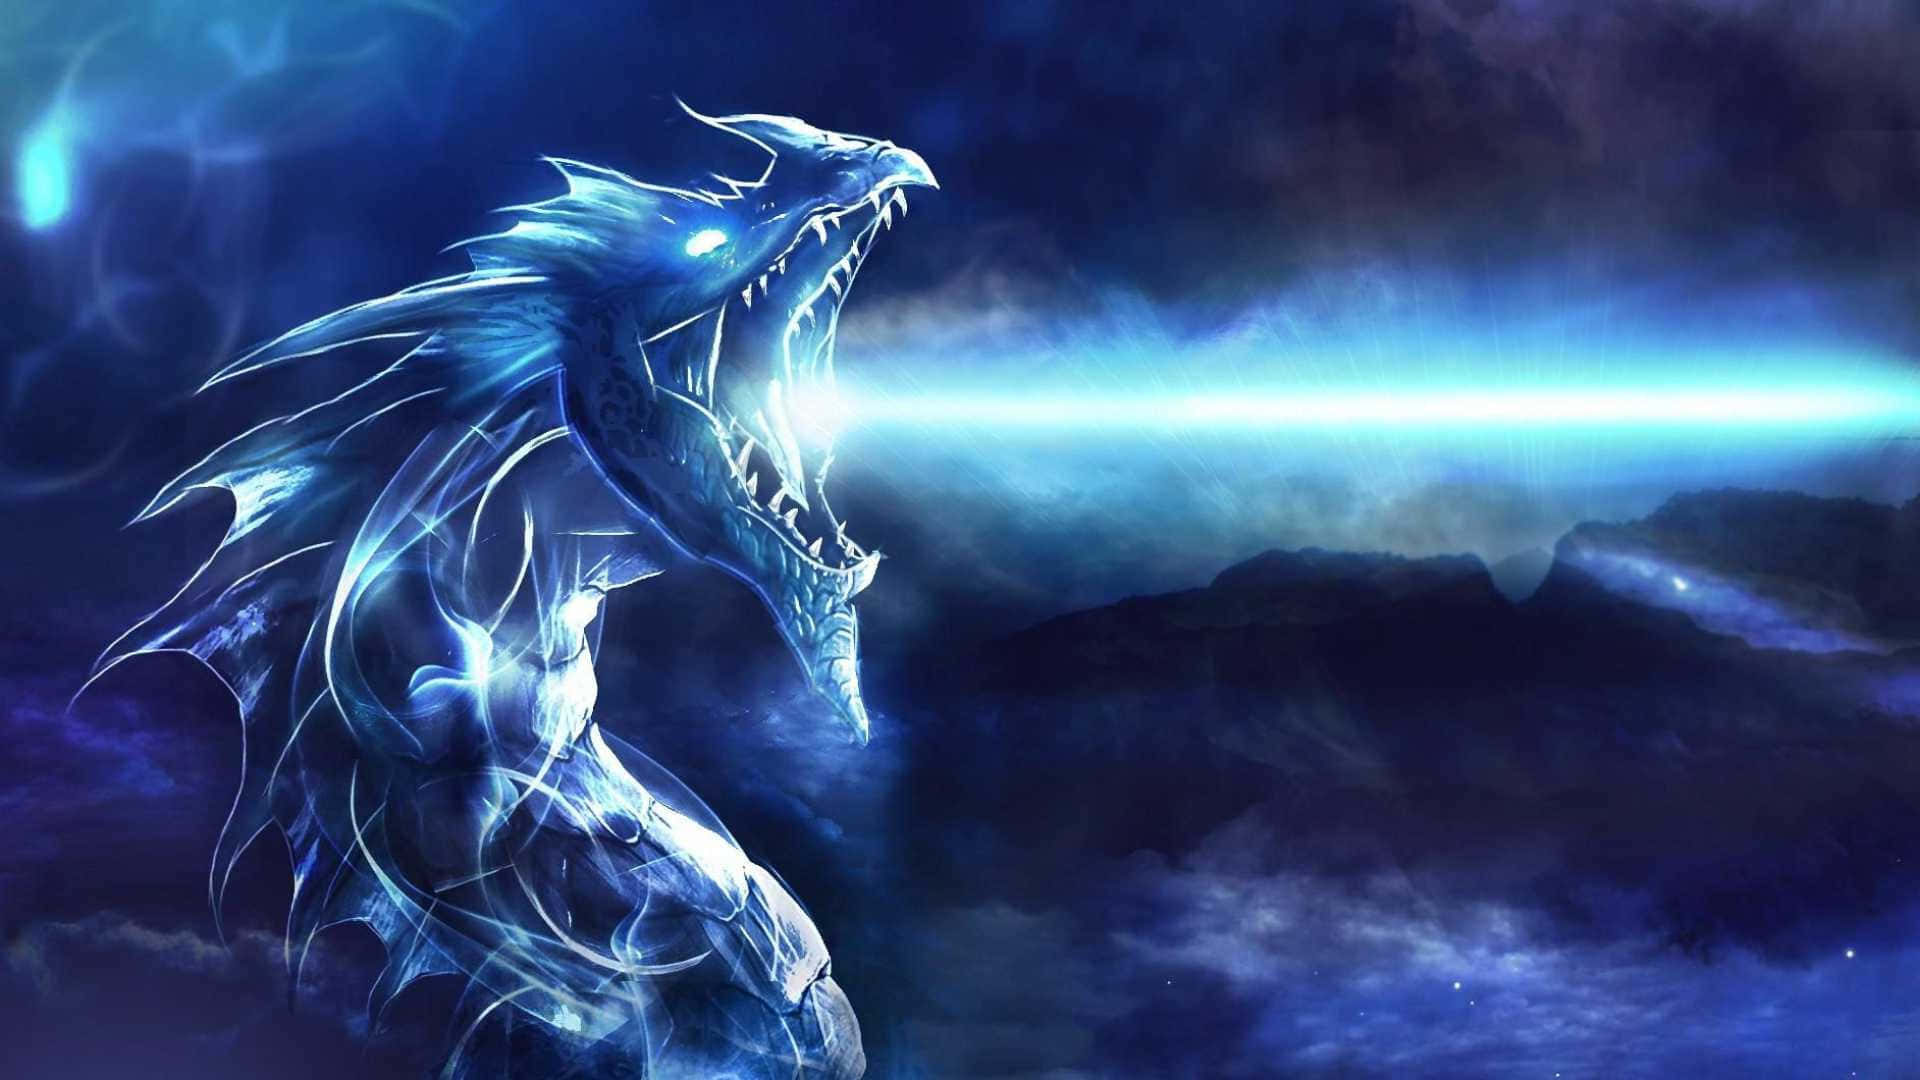 1080p Blue Dragon Lightning Stream Wallpaper